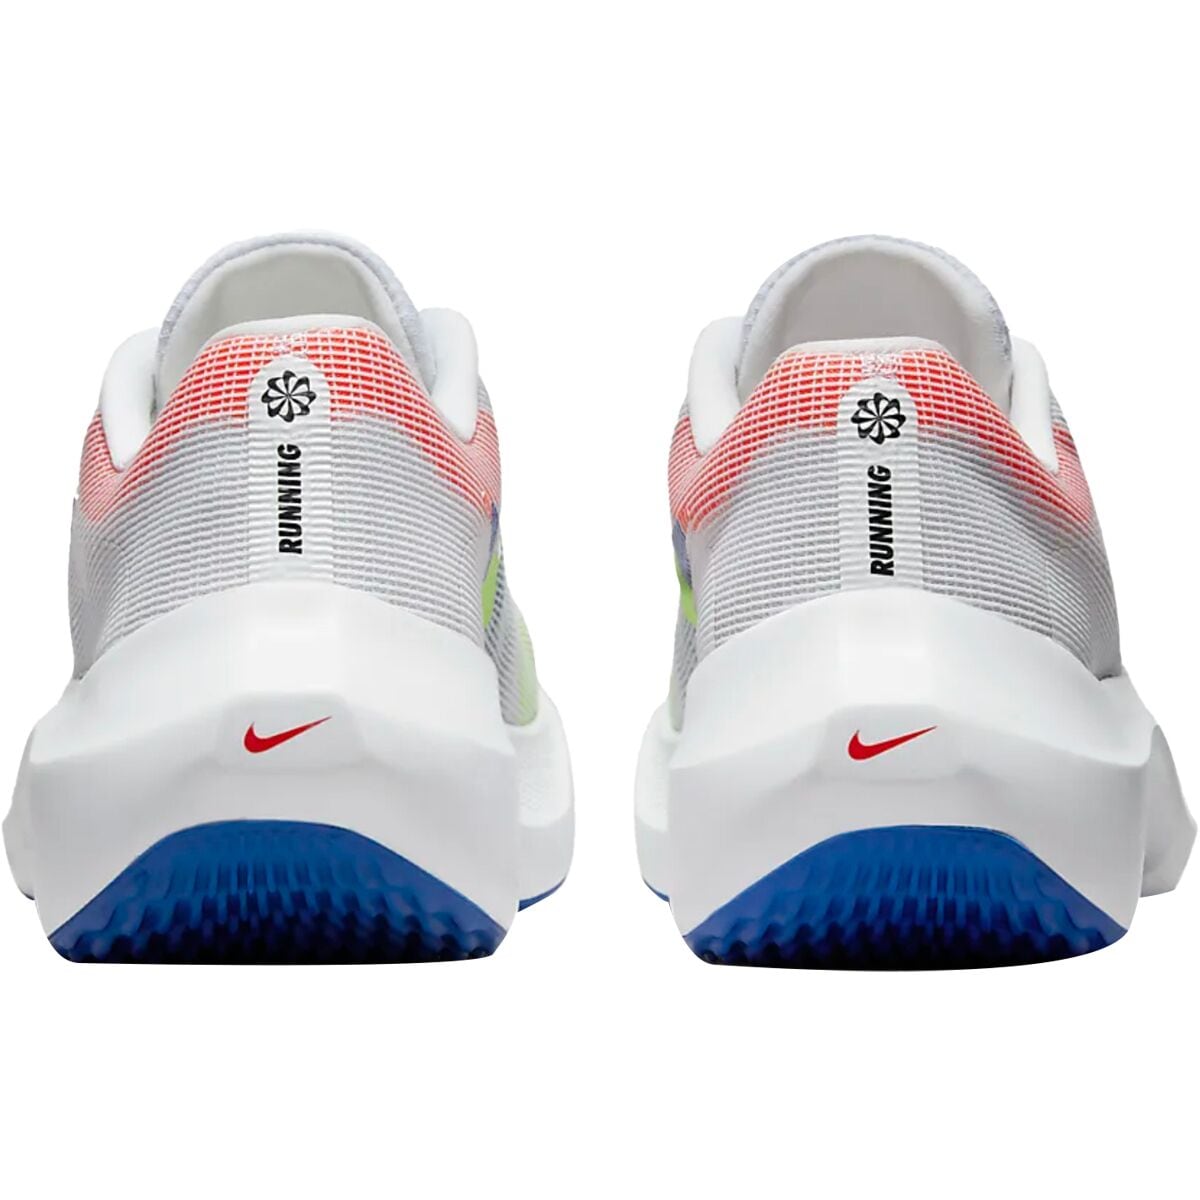 Nike Zoom Fly 5 Premium Running Shoe - Men's - Footwear